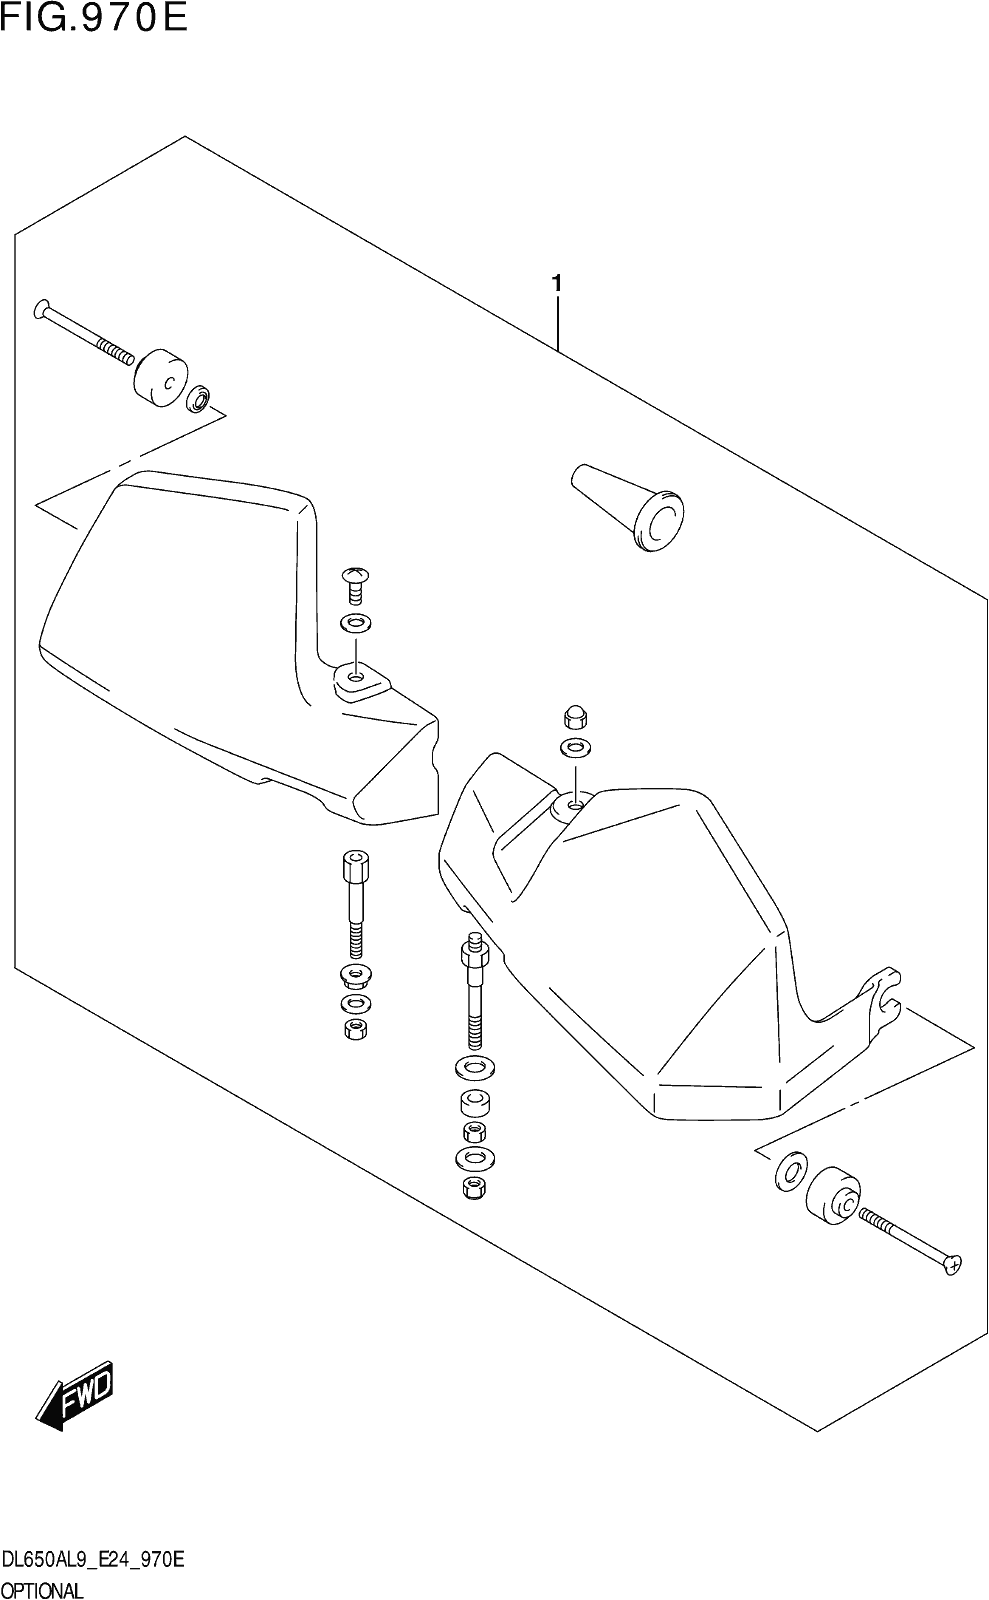 Fig.970e Optional (knuckle Cover Set) (dl650a,dl650aue)